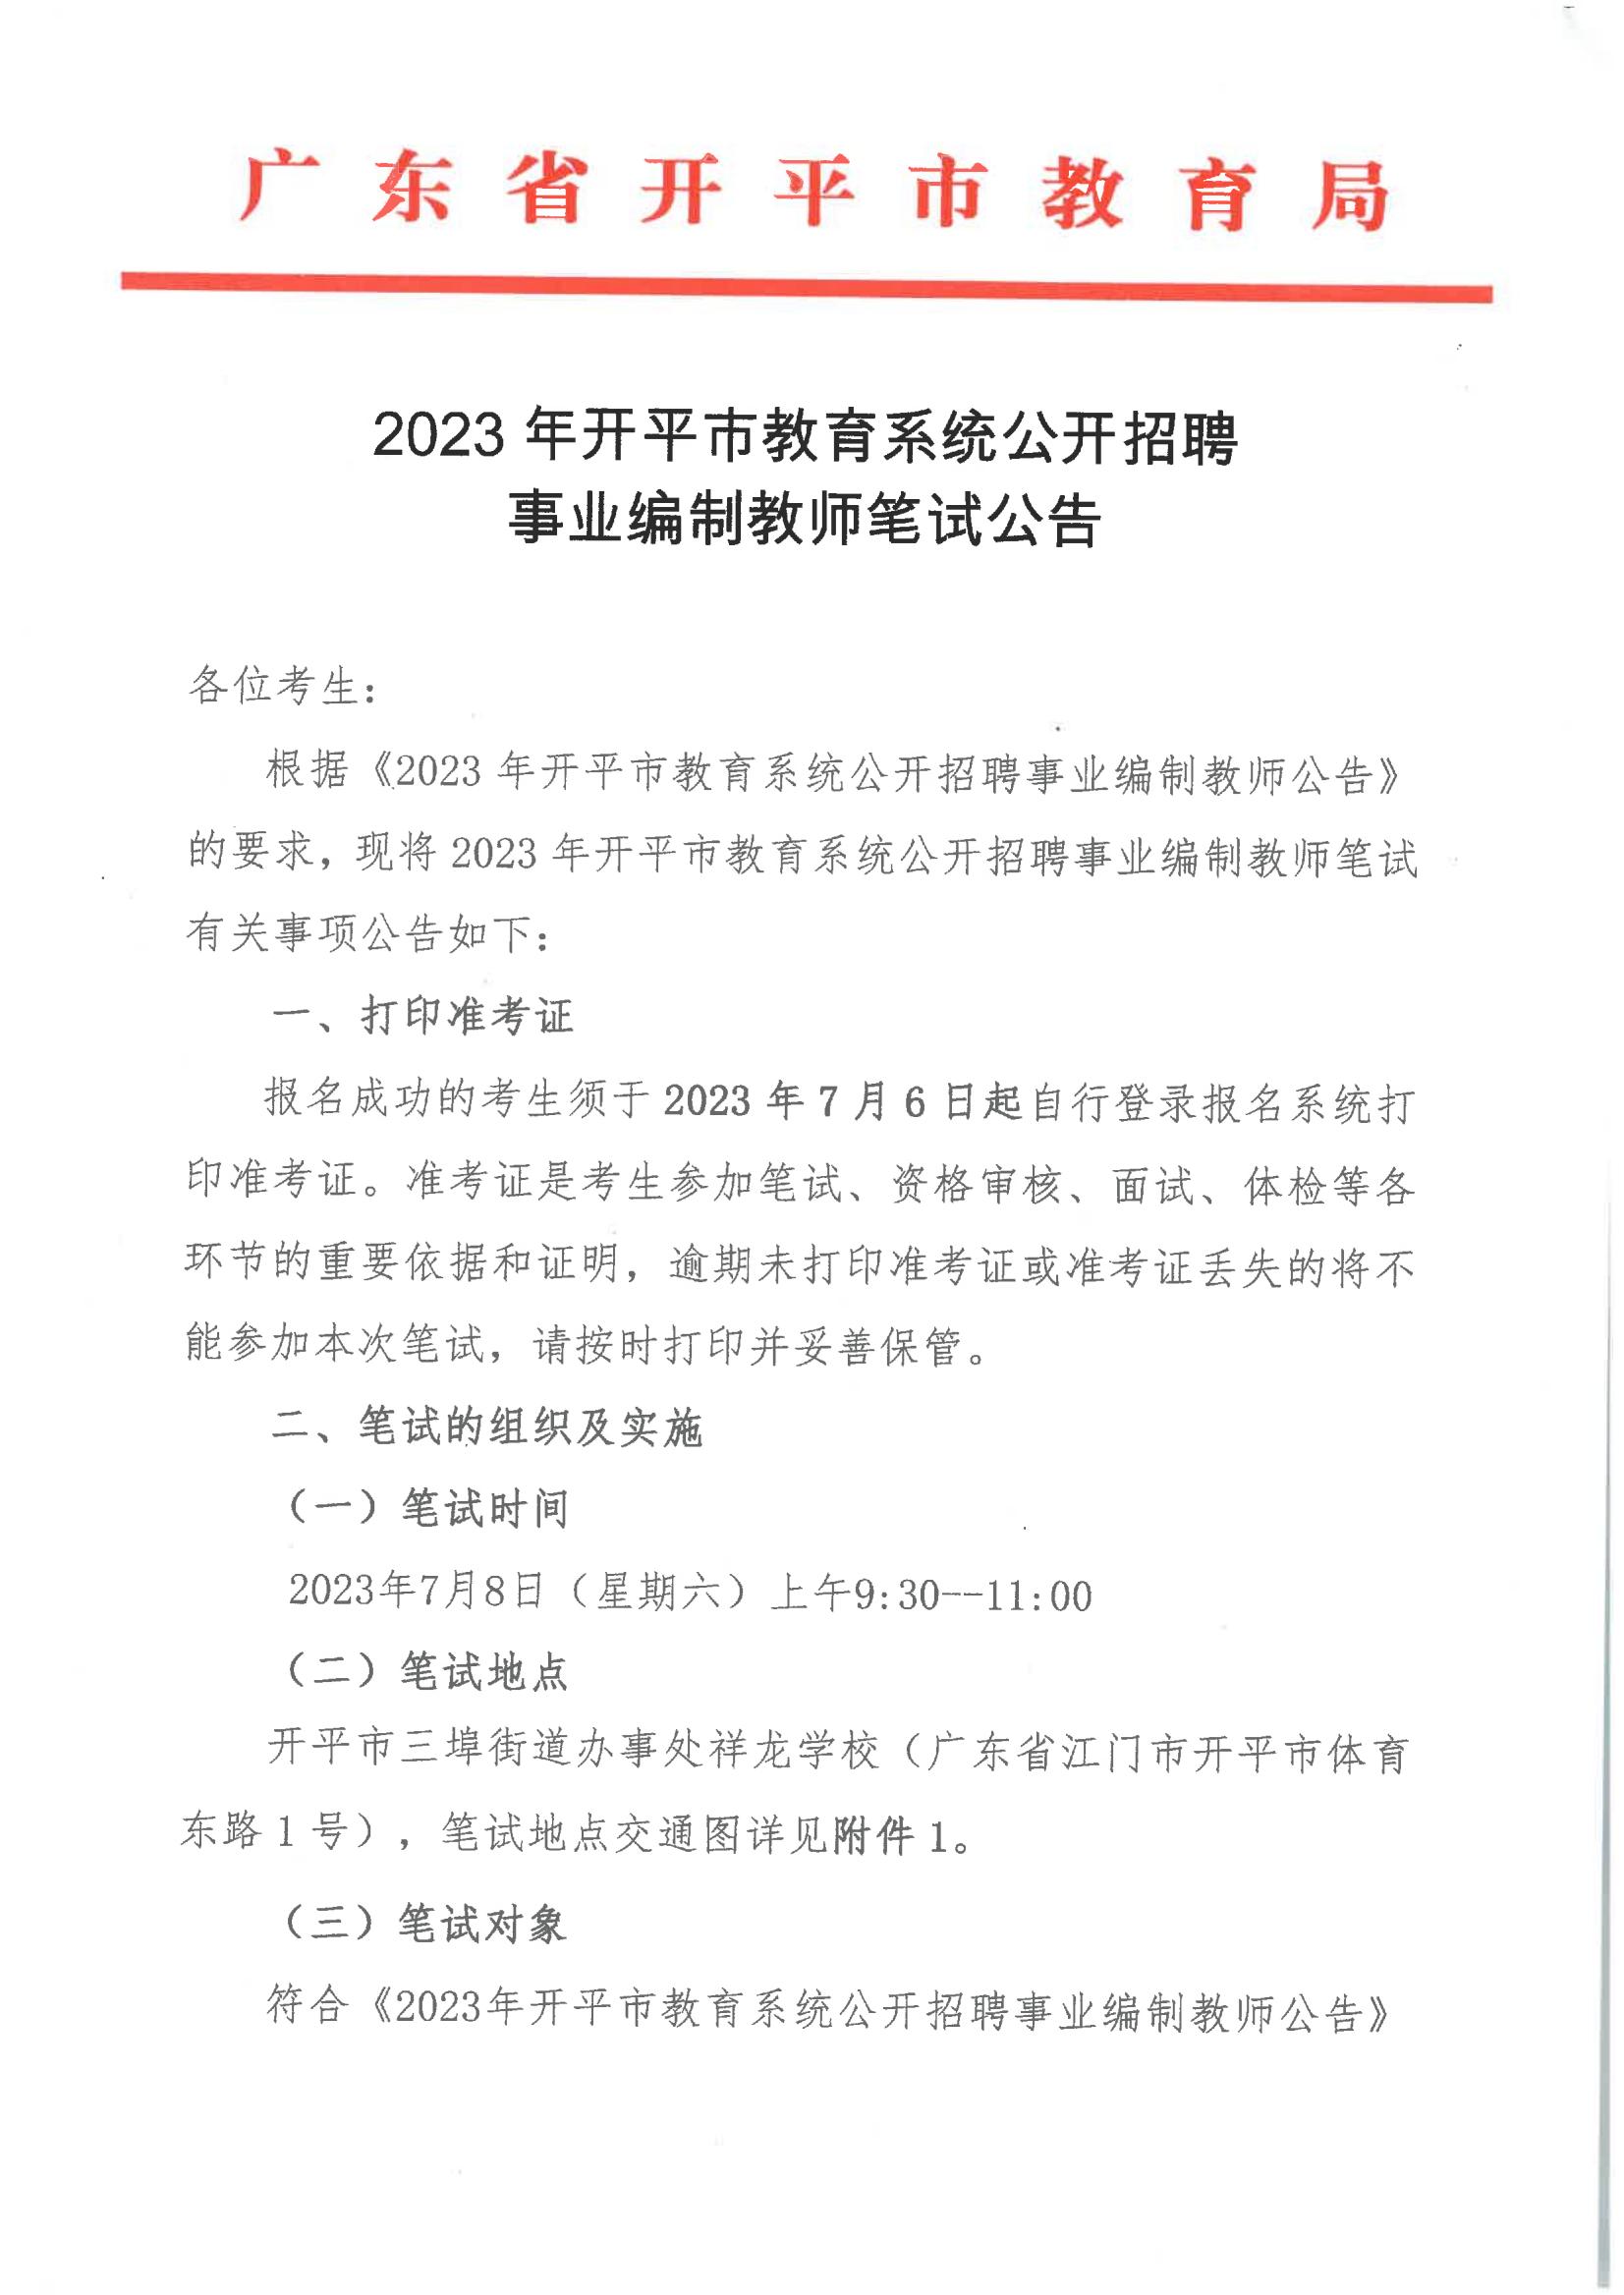 2023年开平市教育系统公开招聘事业编制教师笔试的公告_00.jpg